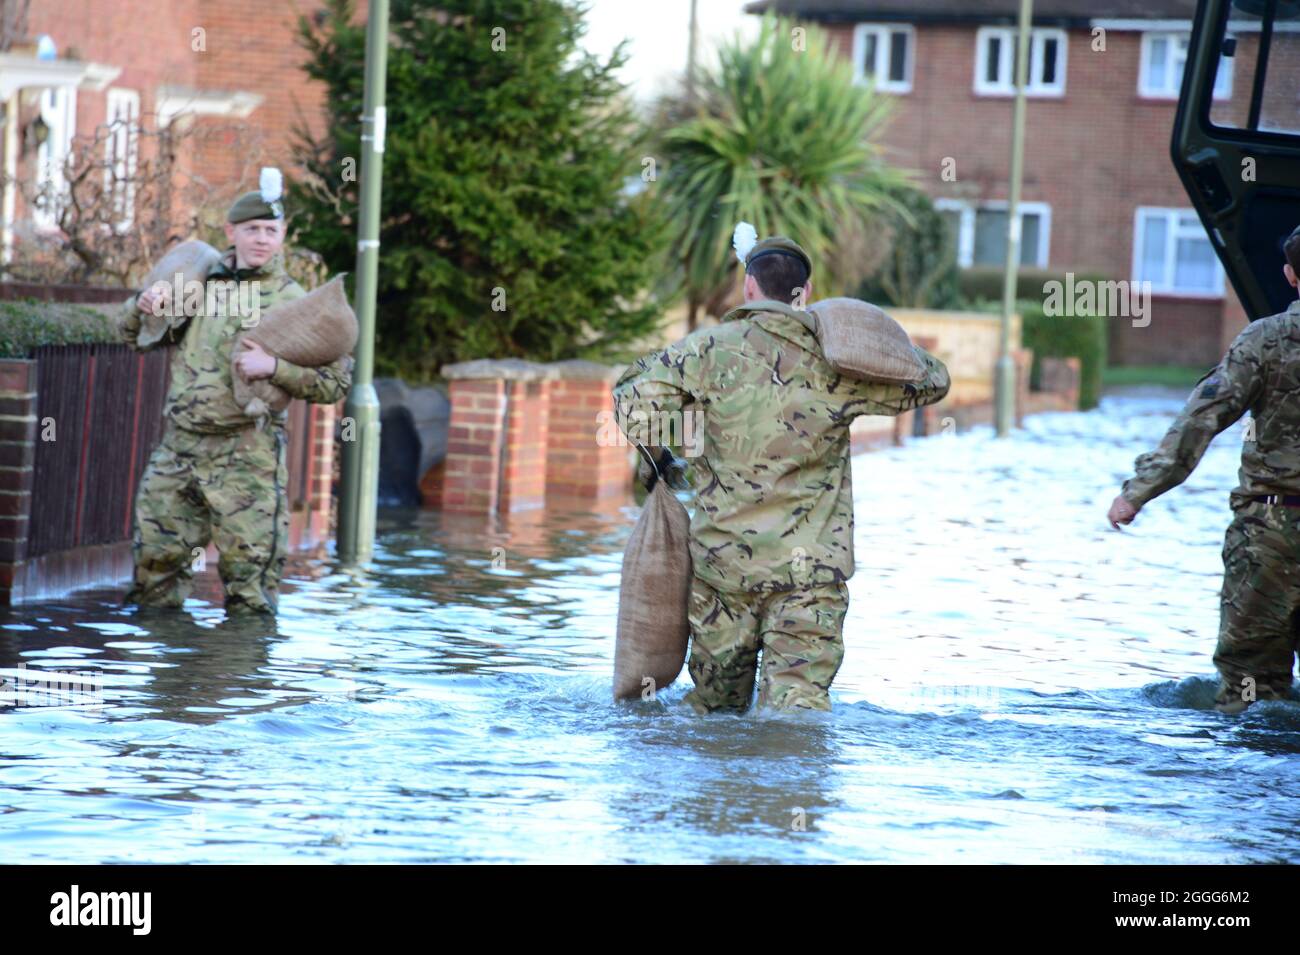 L'armée britannique aide les habitants de Chertsey, victime des inondations. Fournir des sacs de sable et de l'aide au besoin Banque D'Images